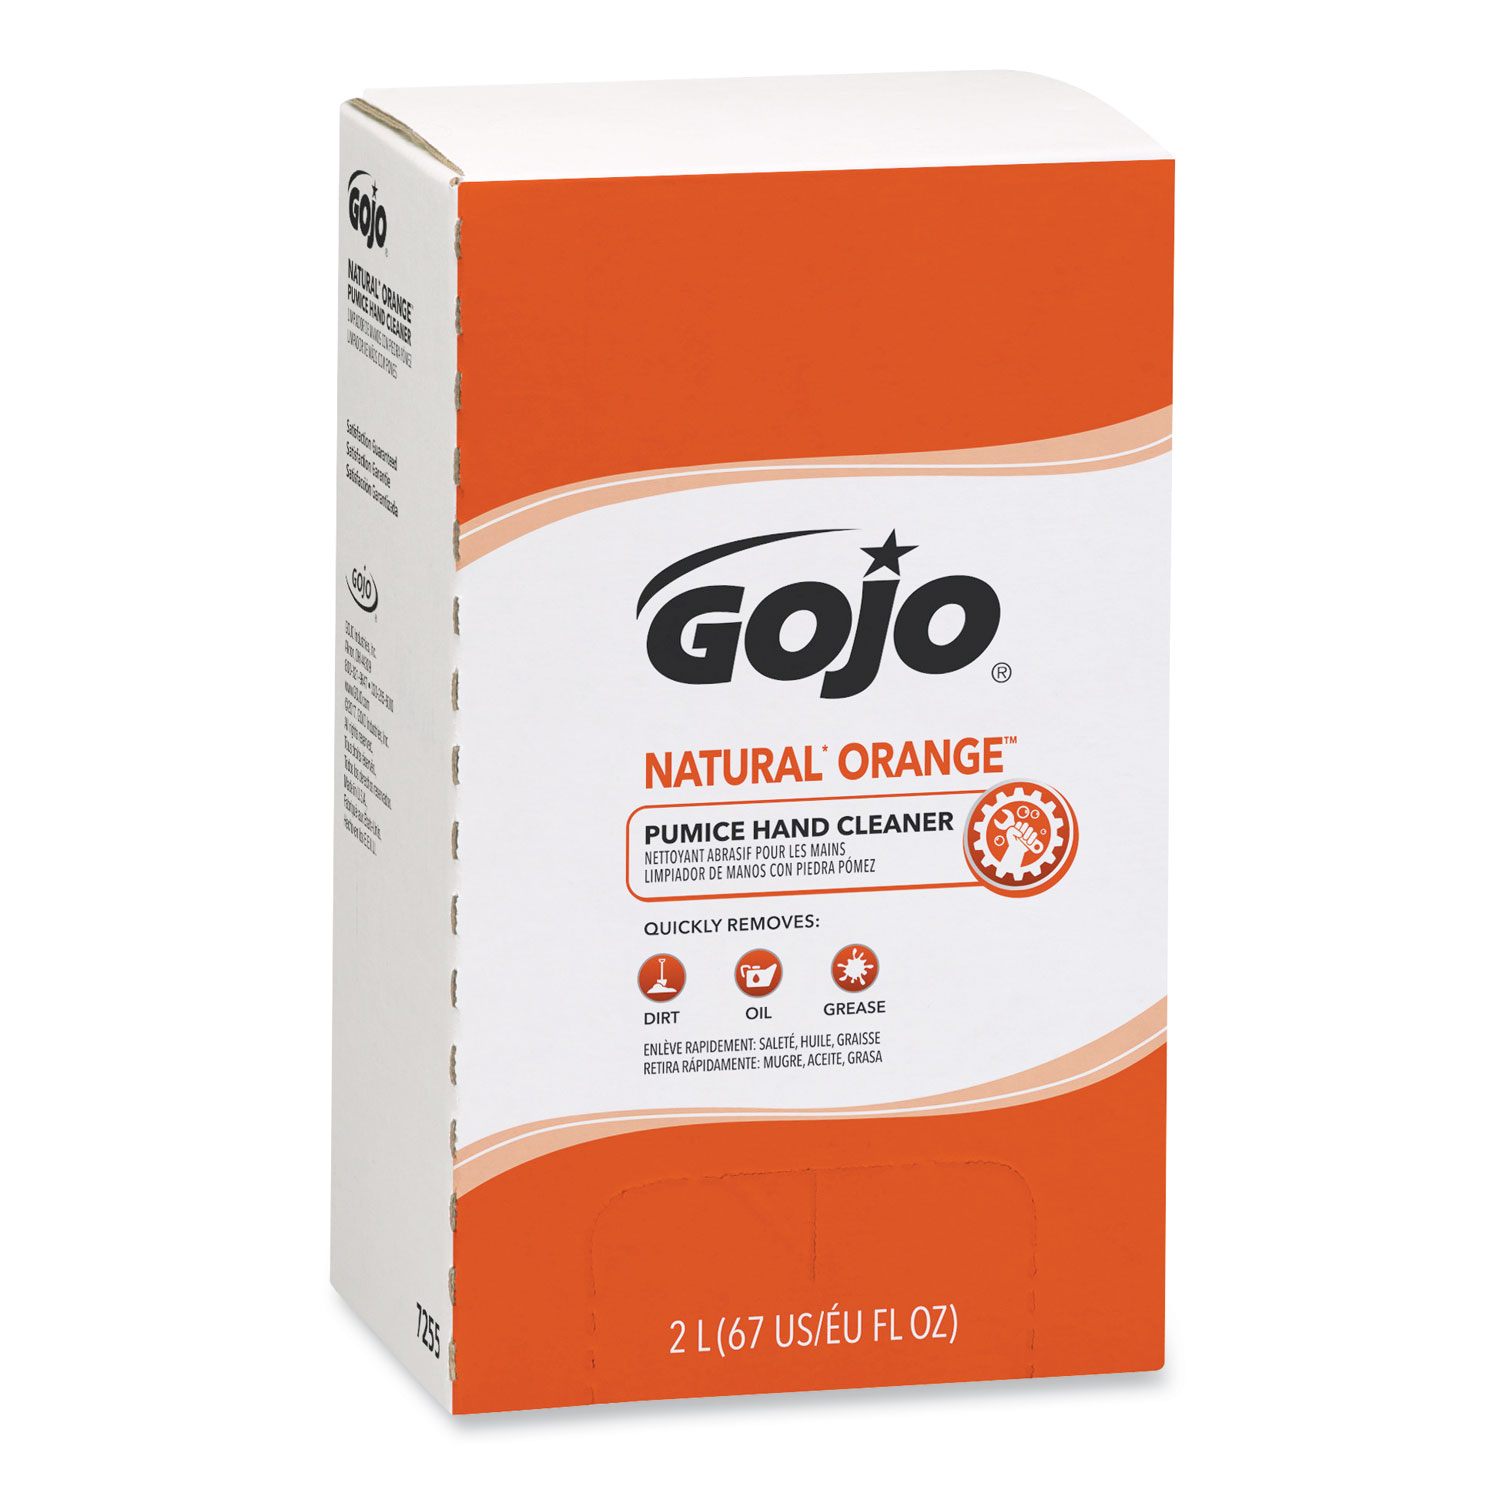  GOJO 7255-04 NATURAL ORANGE Pumice Hand Cleaner Refill, Citrus Scent, 2000mL, 4/Carton (GOJ7255) 